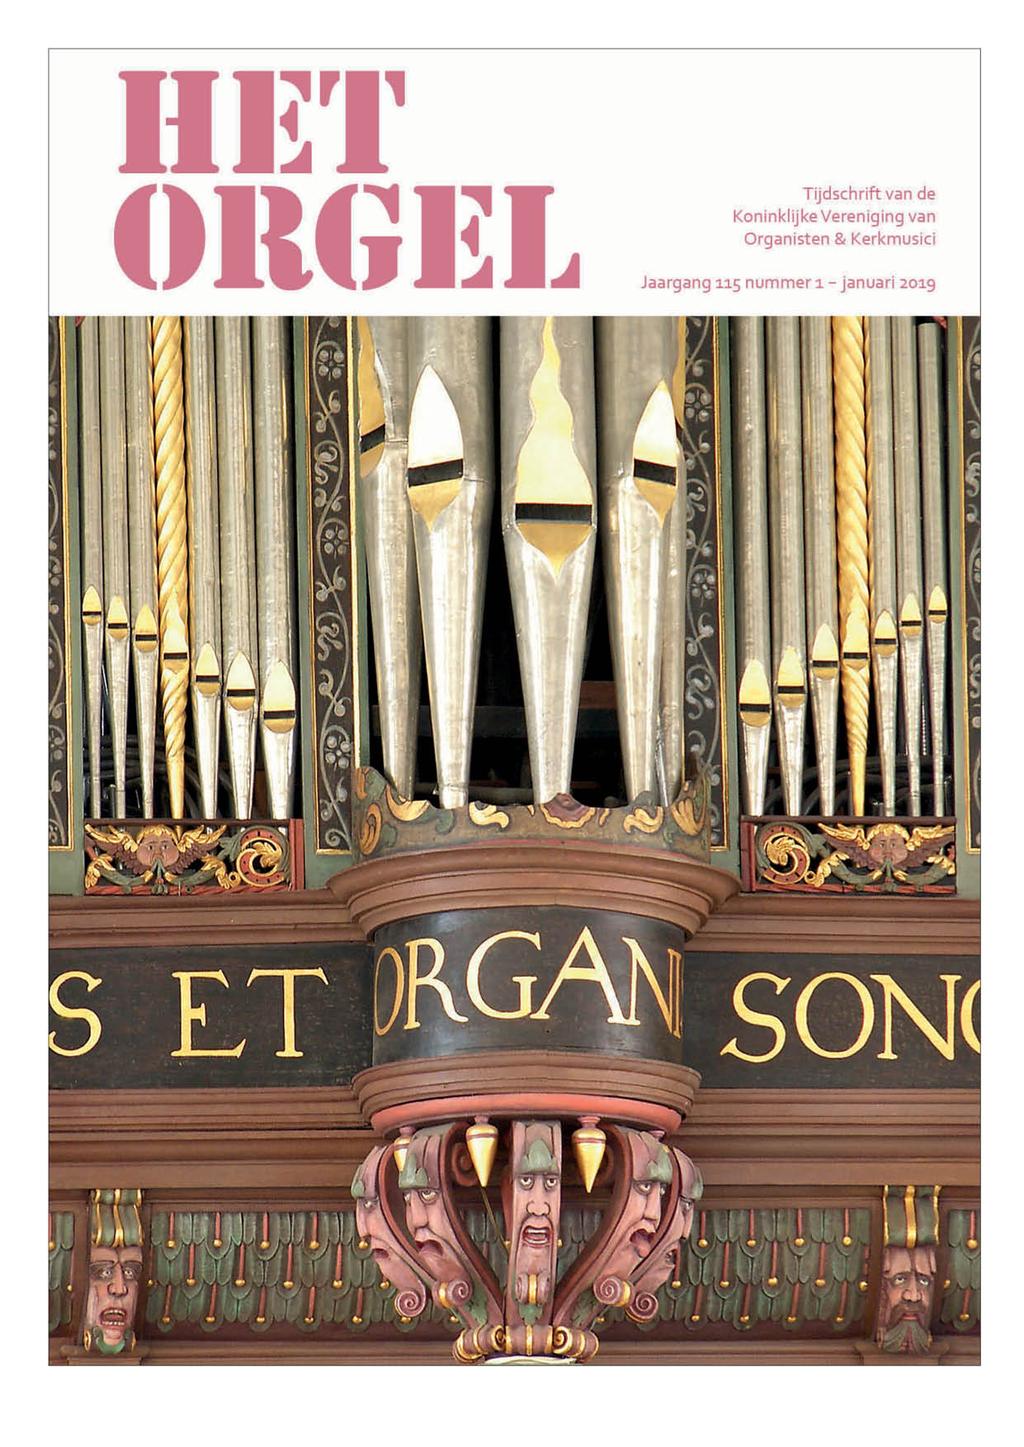 Tariefkaart 2019 Het Orgel Titel: Verschijningsfrequentie: Uitgave van: Oplage : Het Orgel 6x per jaar Koninklijke Vereniging van Organisten en Kerkmusici (KVOK) 1.